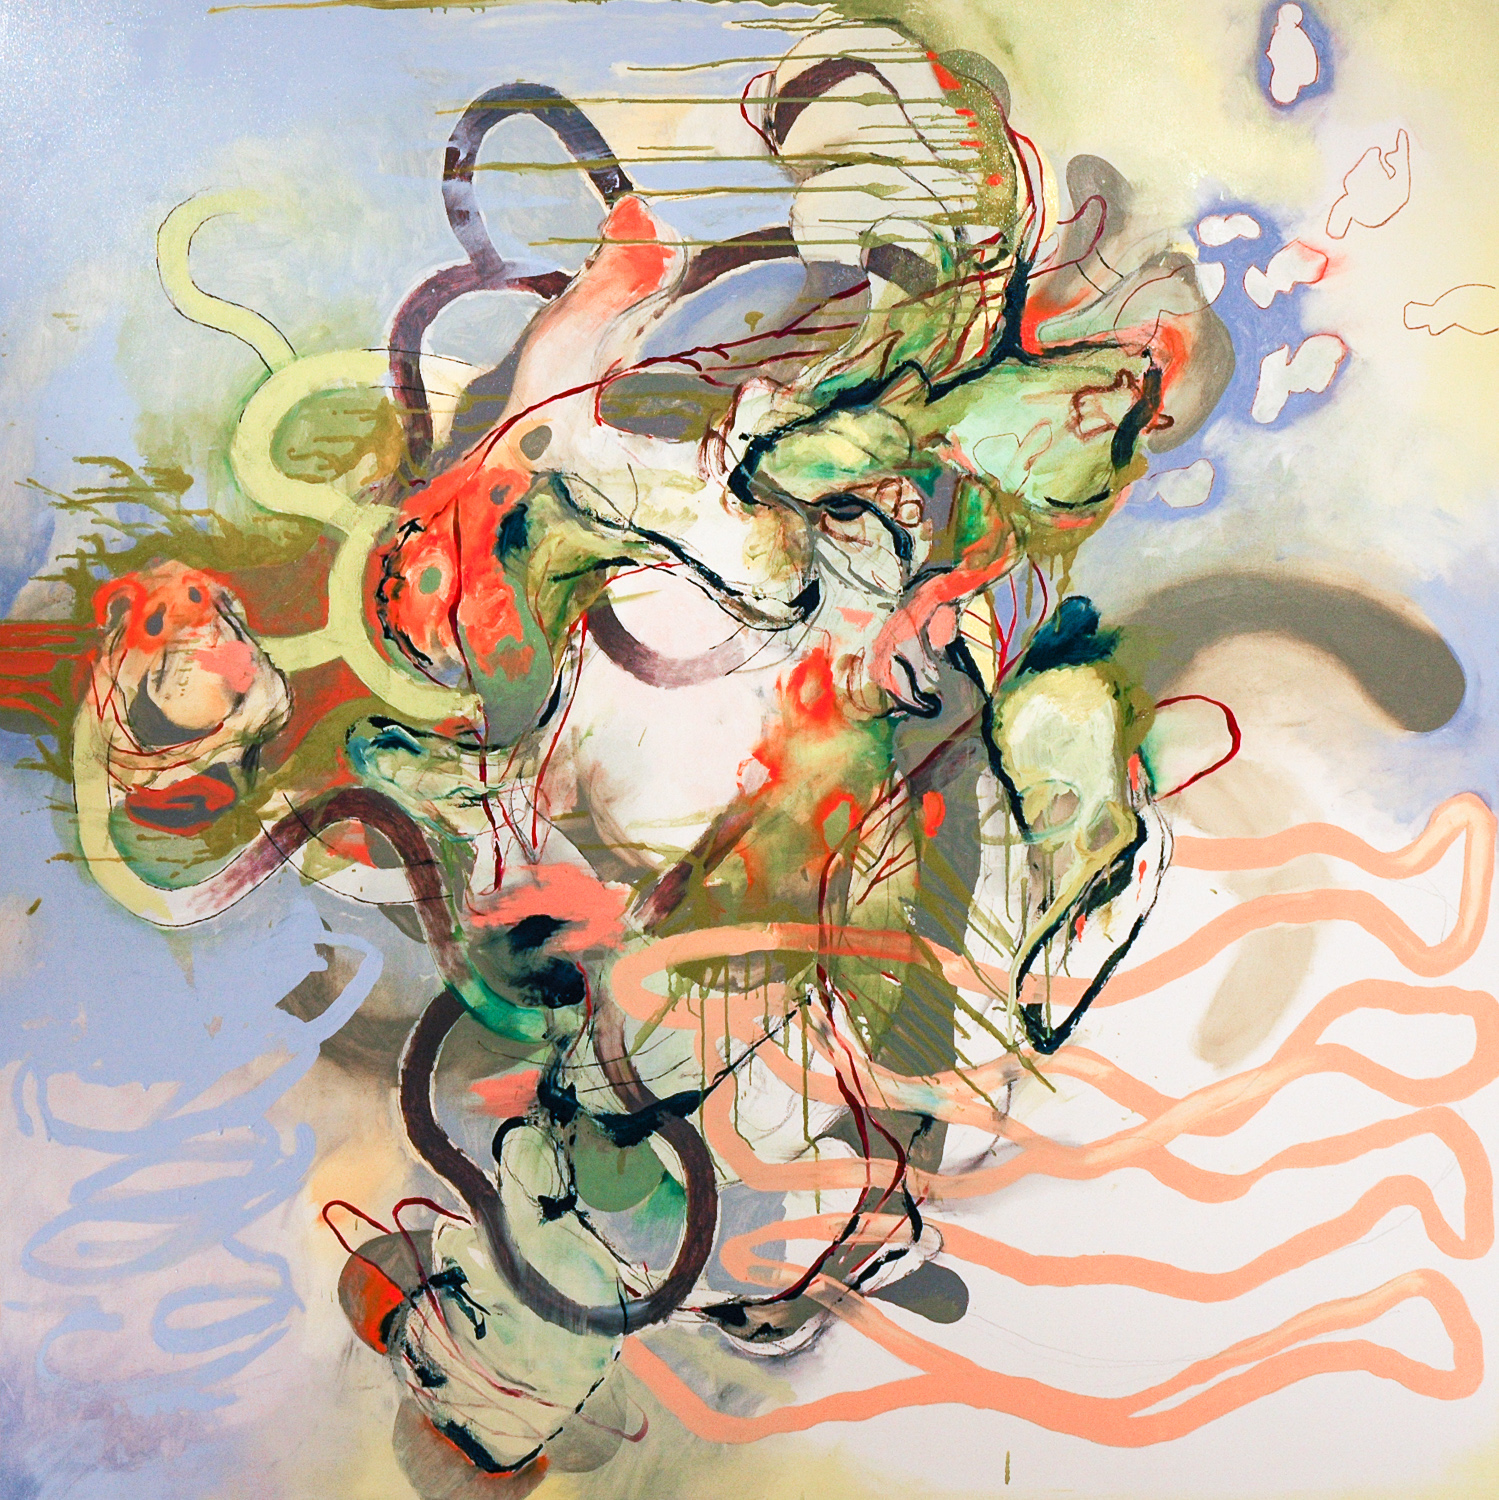   Untitled (Laocoön Series)&nbsp; , 2009 Oil on canvas 72 x 72" 